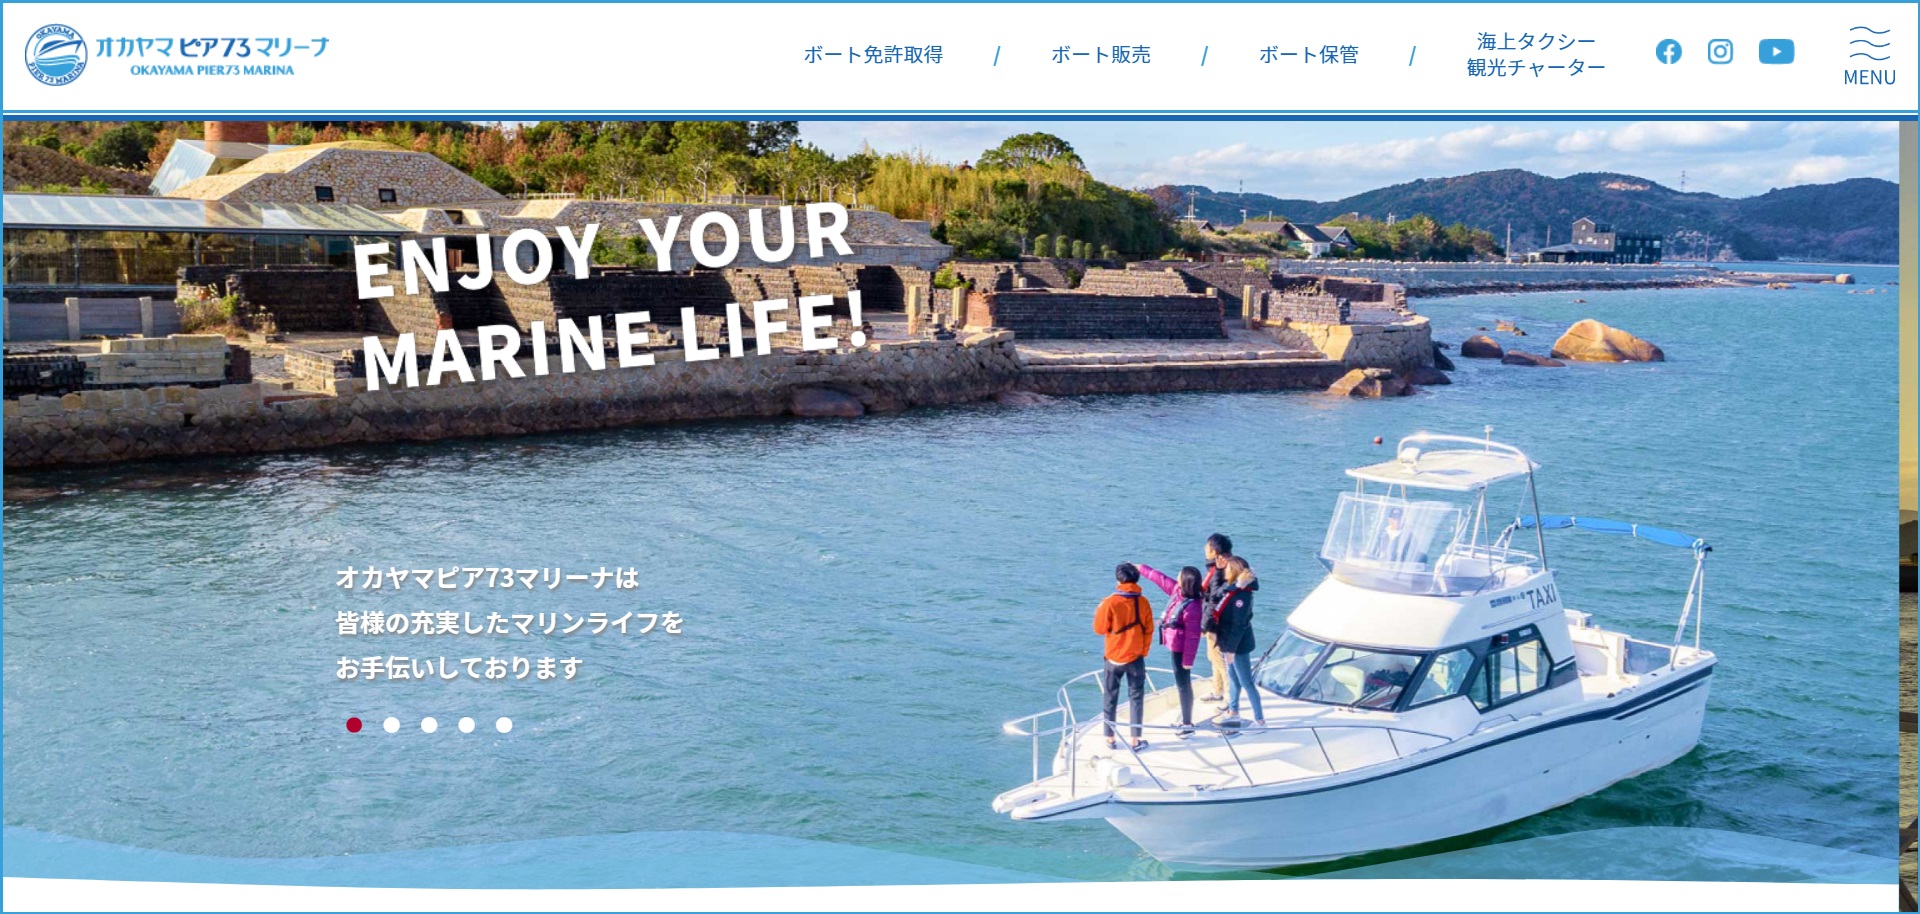 島根県 株式会社MSTC（マリンライセンス）で小型船舶免許を取得